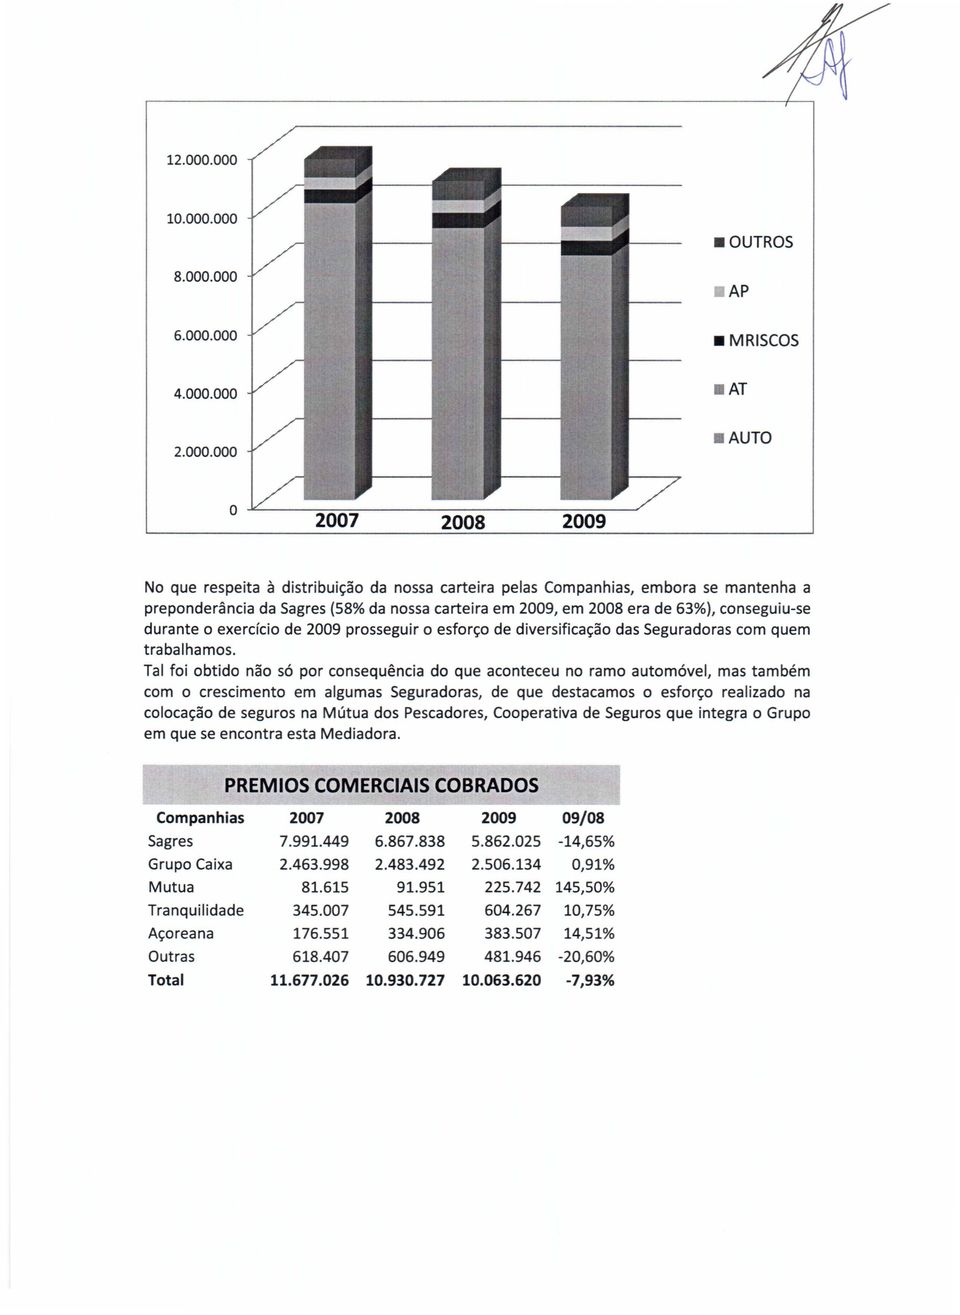 nssa carteira em 2009, em 2008 era de 63%), cnseguiu-se durante 0 exerdci de 2009 prsseguir 0 esfr~ de diversifica~a das Seguradras cm quem trabalhams.